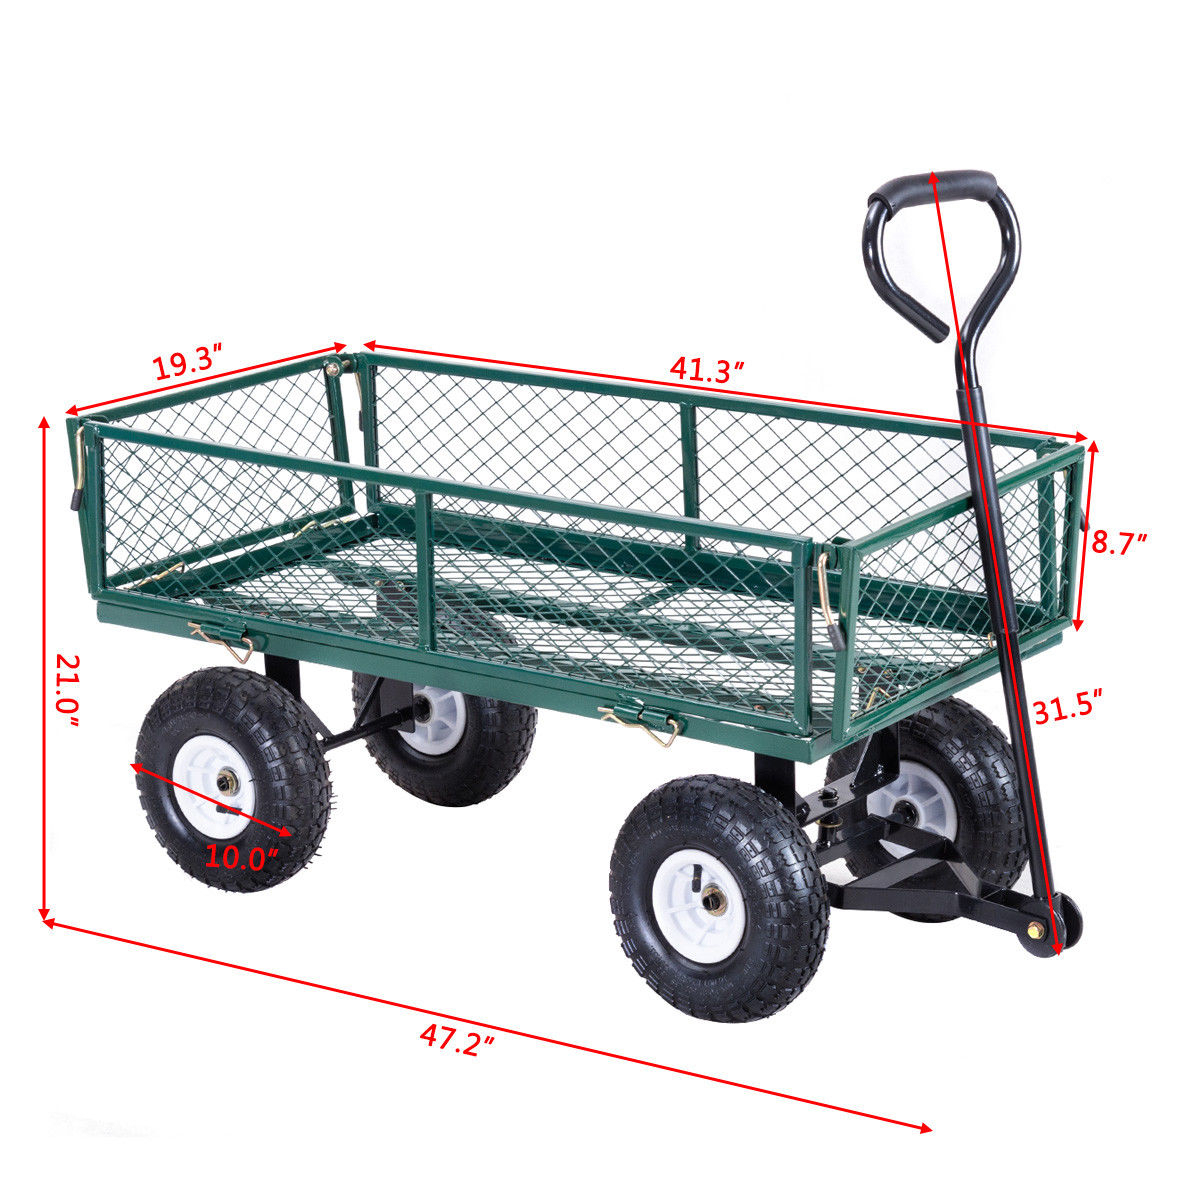 Heavy Duty Lawn Garden Utility Cart Wagon Wheelbarrow Steel Trailer